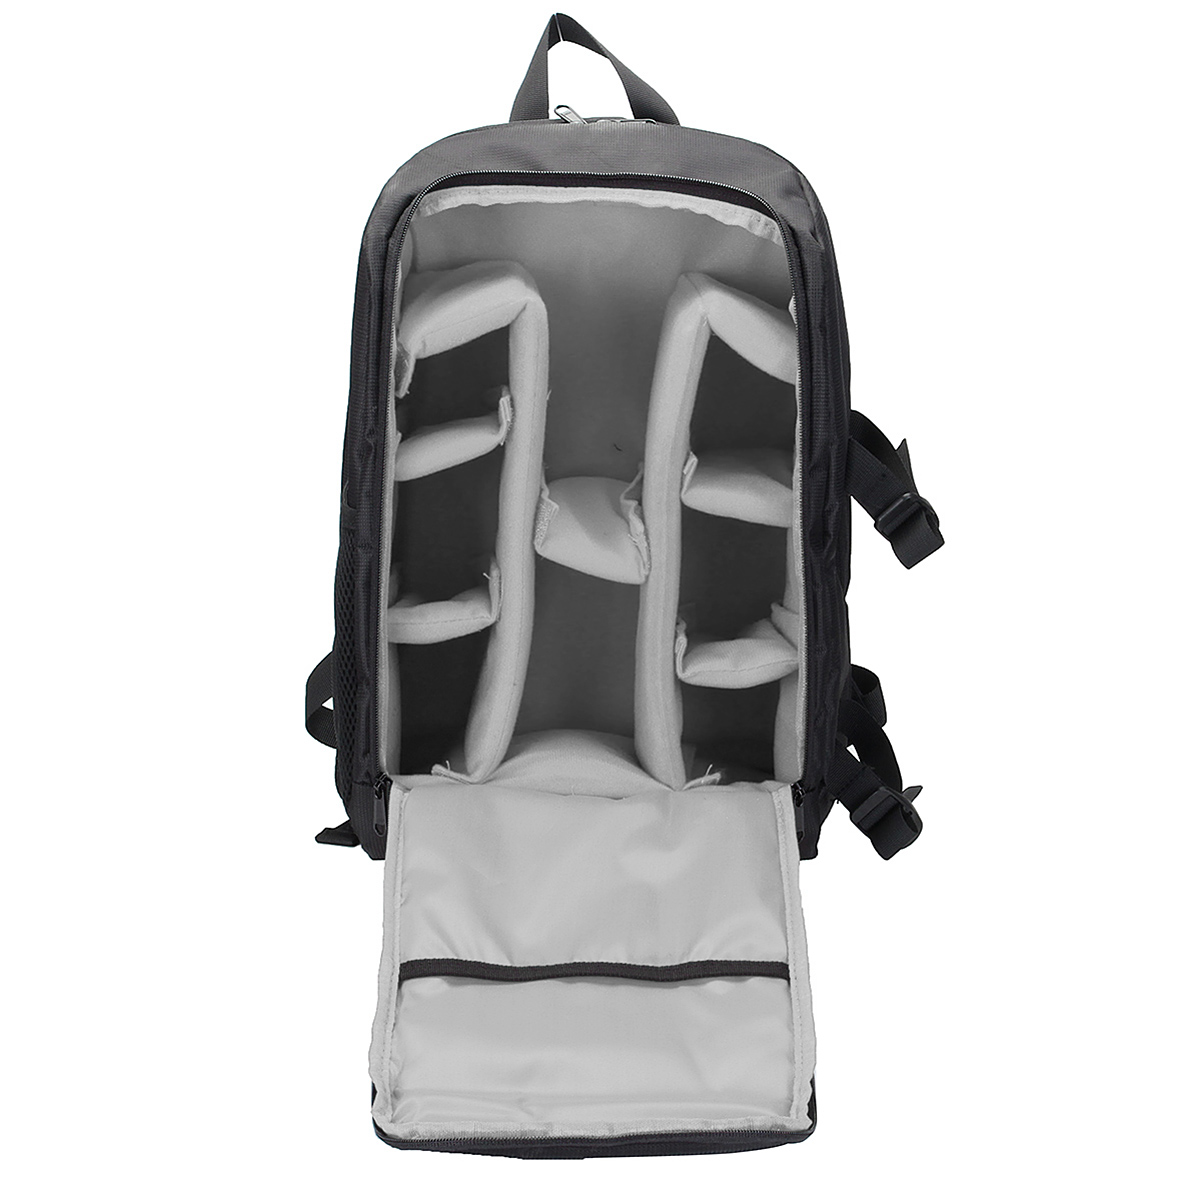 Waterproof-Backpack-Shoulder-Bag-Laptop-Case-For-DSLR-Camera-Lens-Accessories-1401643-6